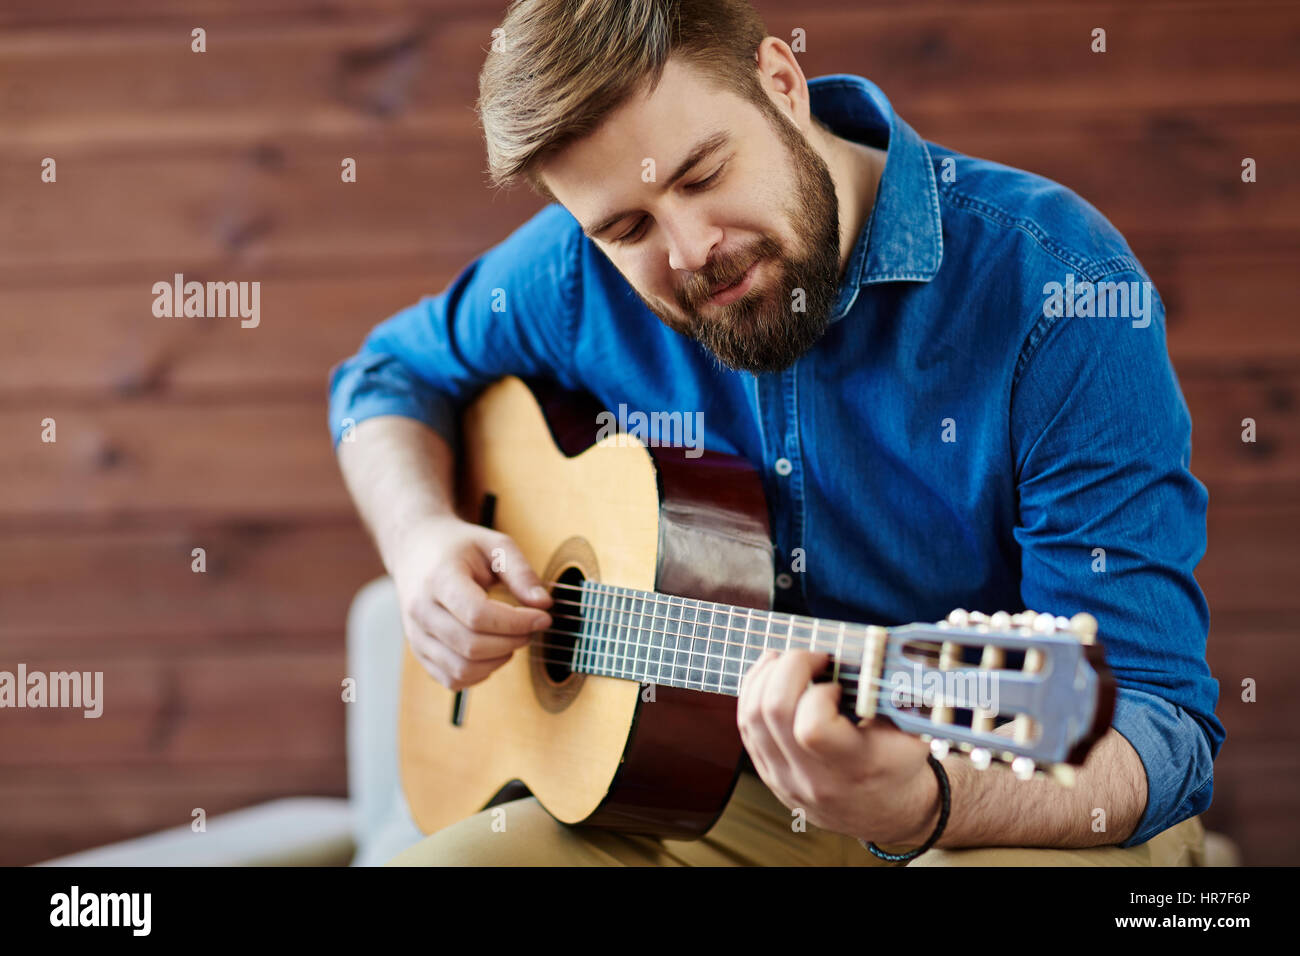 Processo di creazione musicale: sorridente giovane uomo in denim shirt avvolto nella composizione di nuova melodia Foto Stock